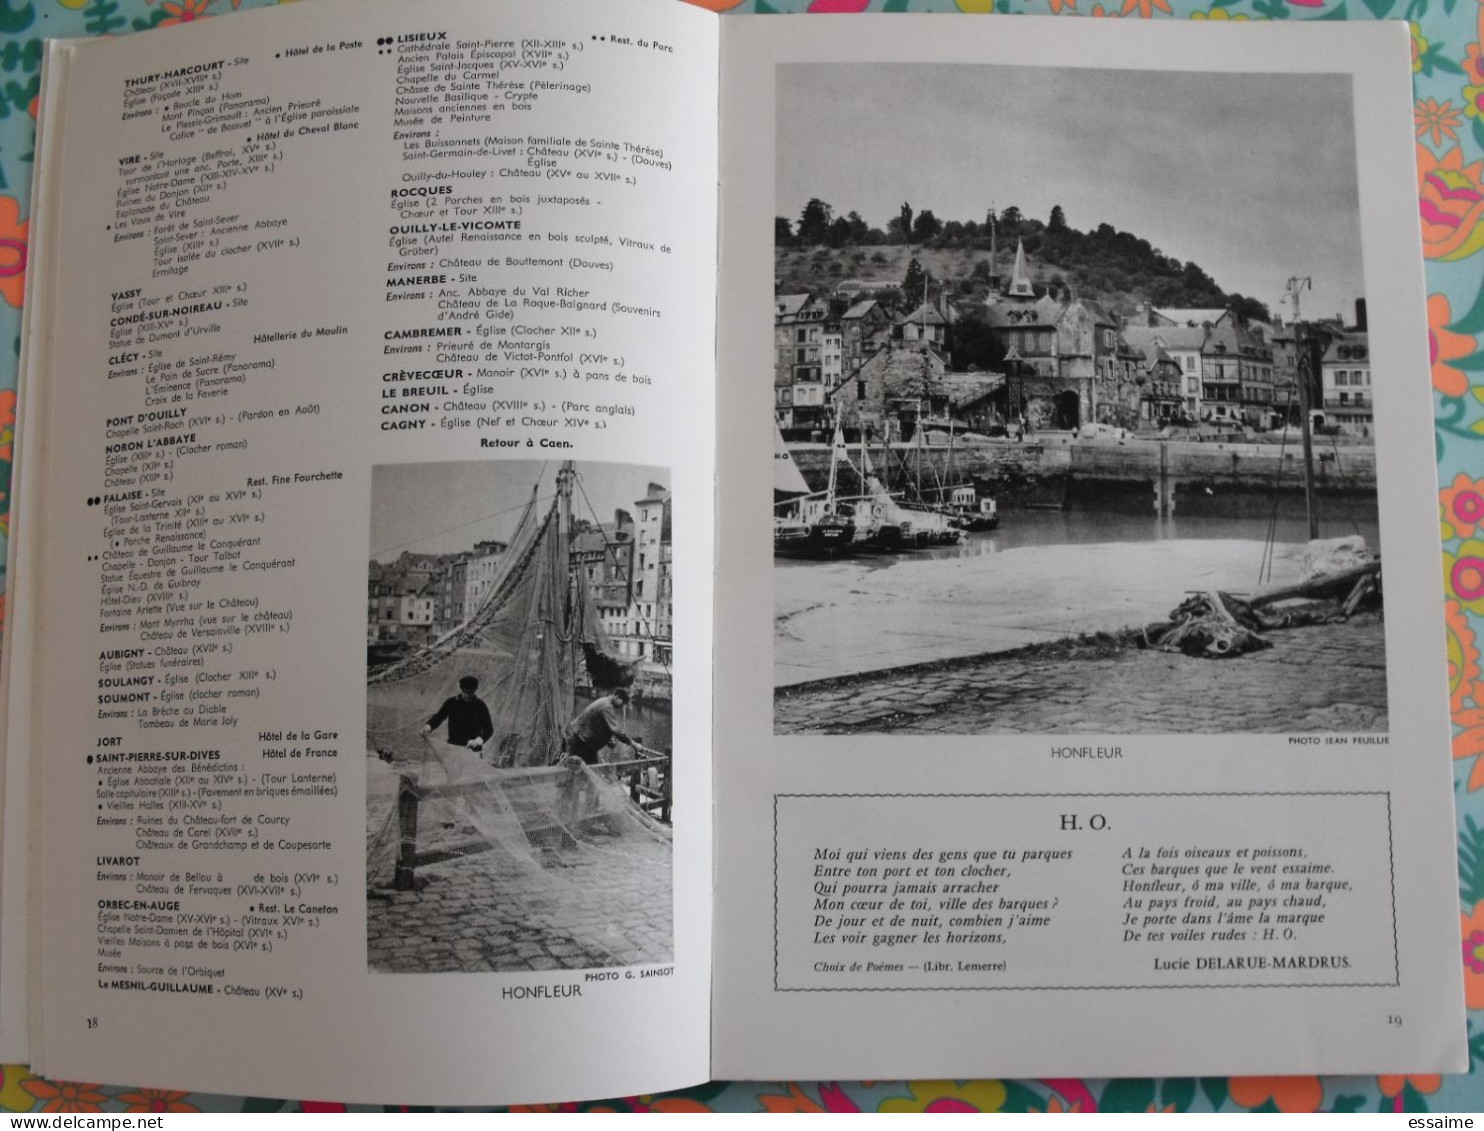 La France à table n° 106. 1964. Calvados.  brécy creully caen bayeux falaise deauville trouville honfleur. gastronomie